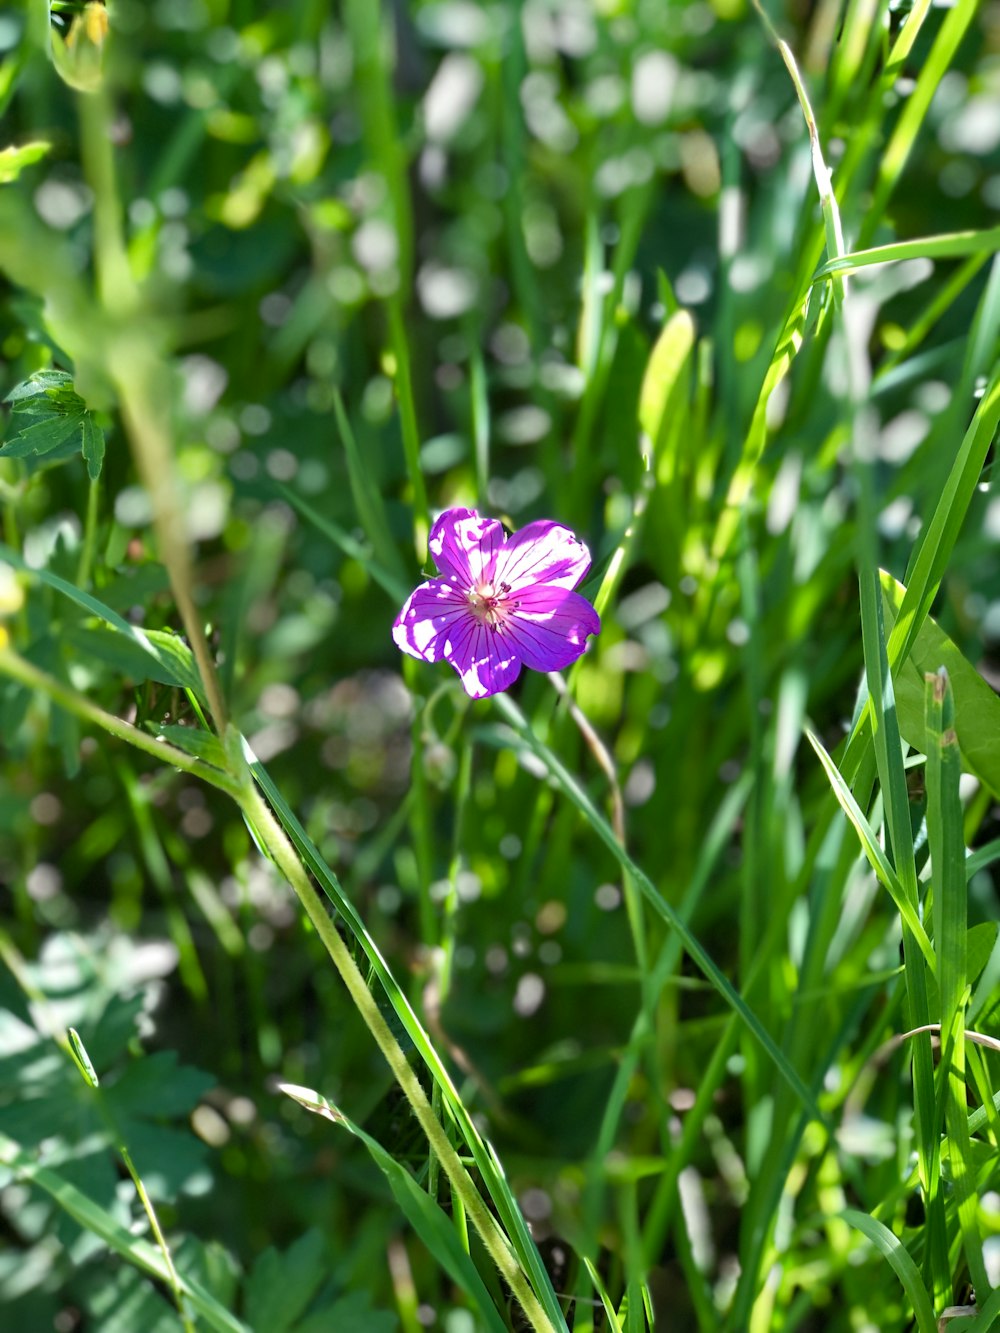 a purple flower in a field of grass